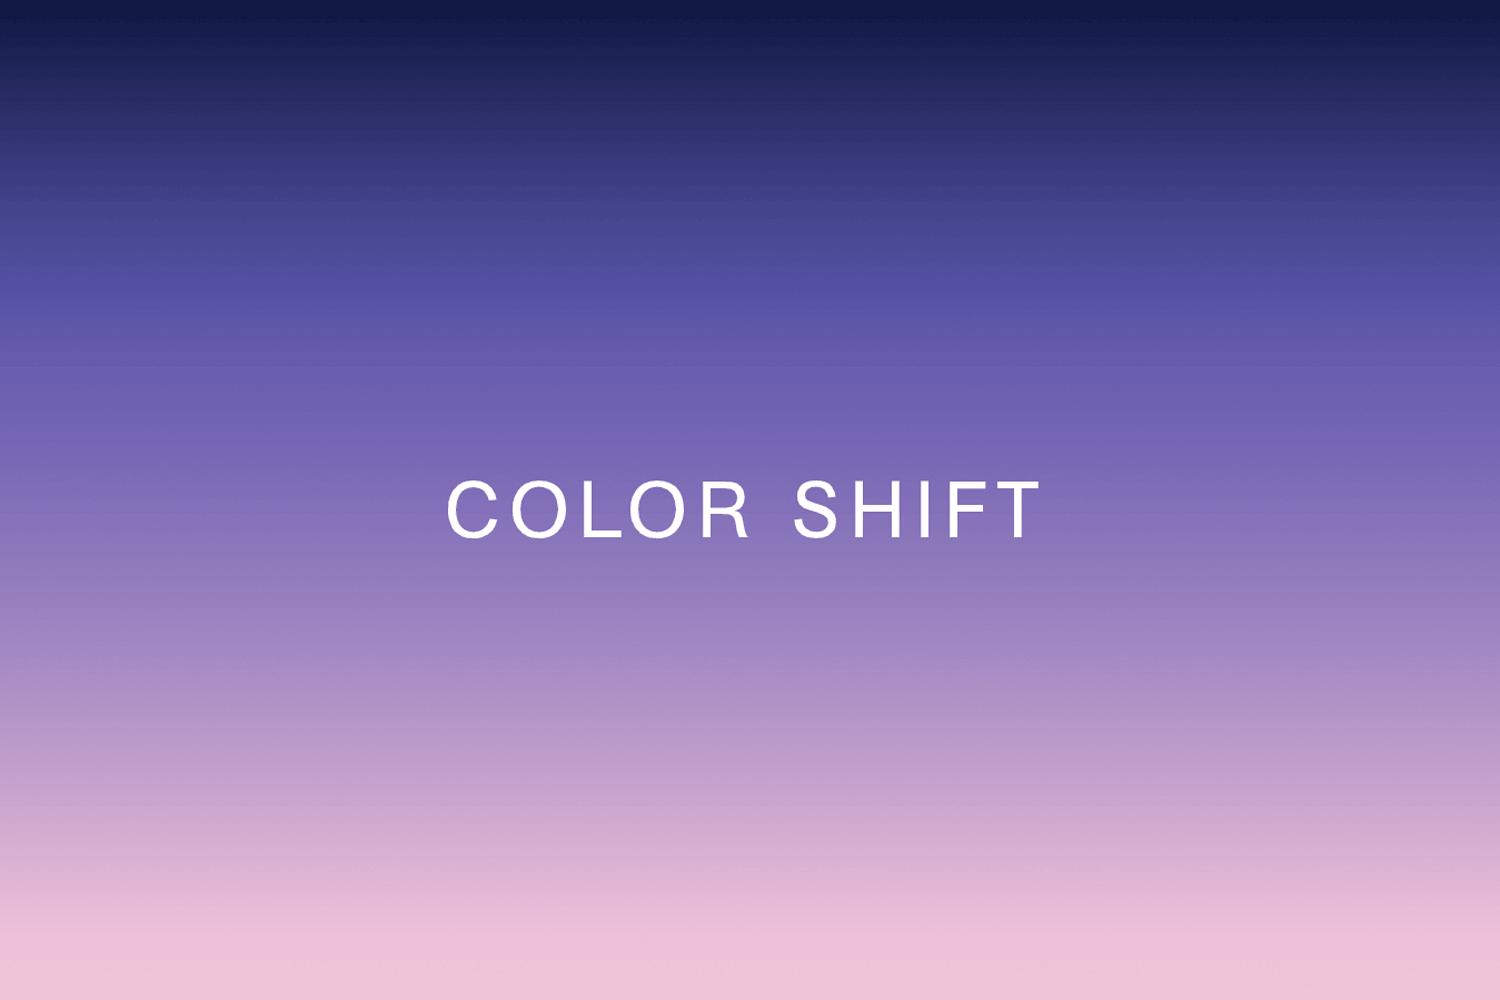 colorshift_thumb